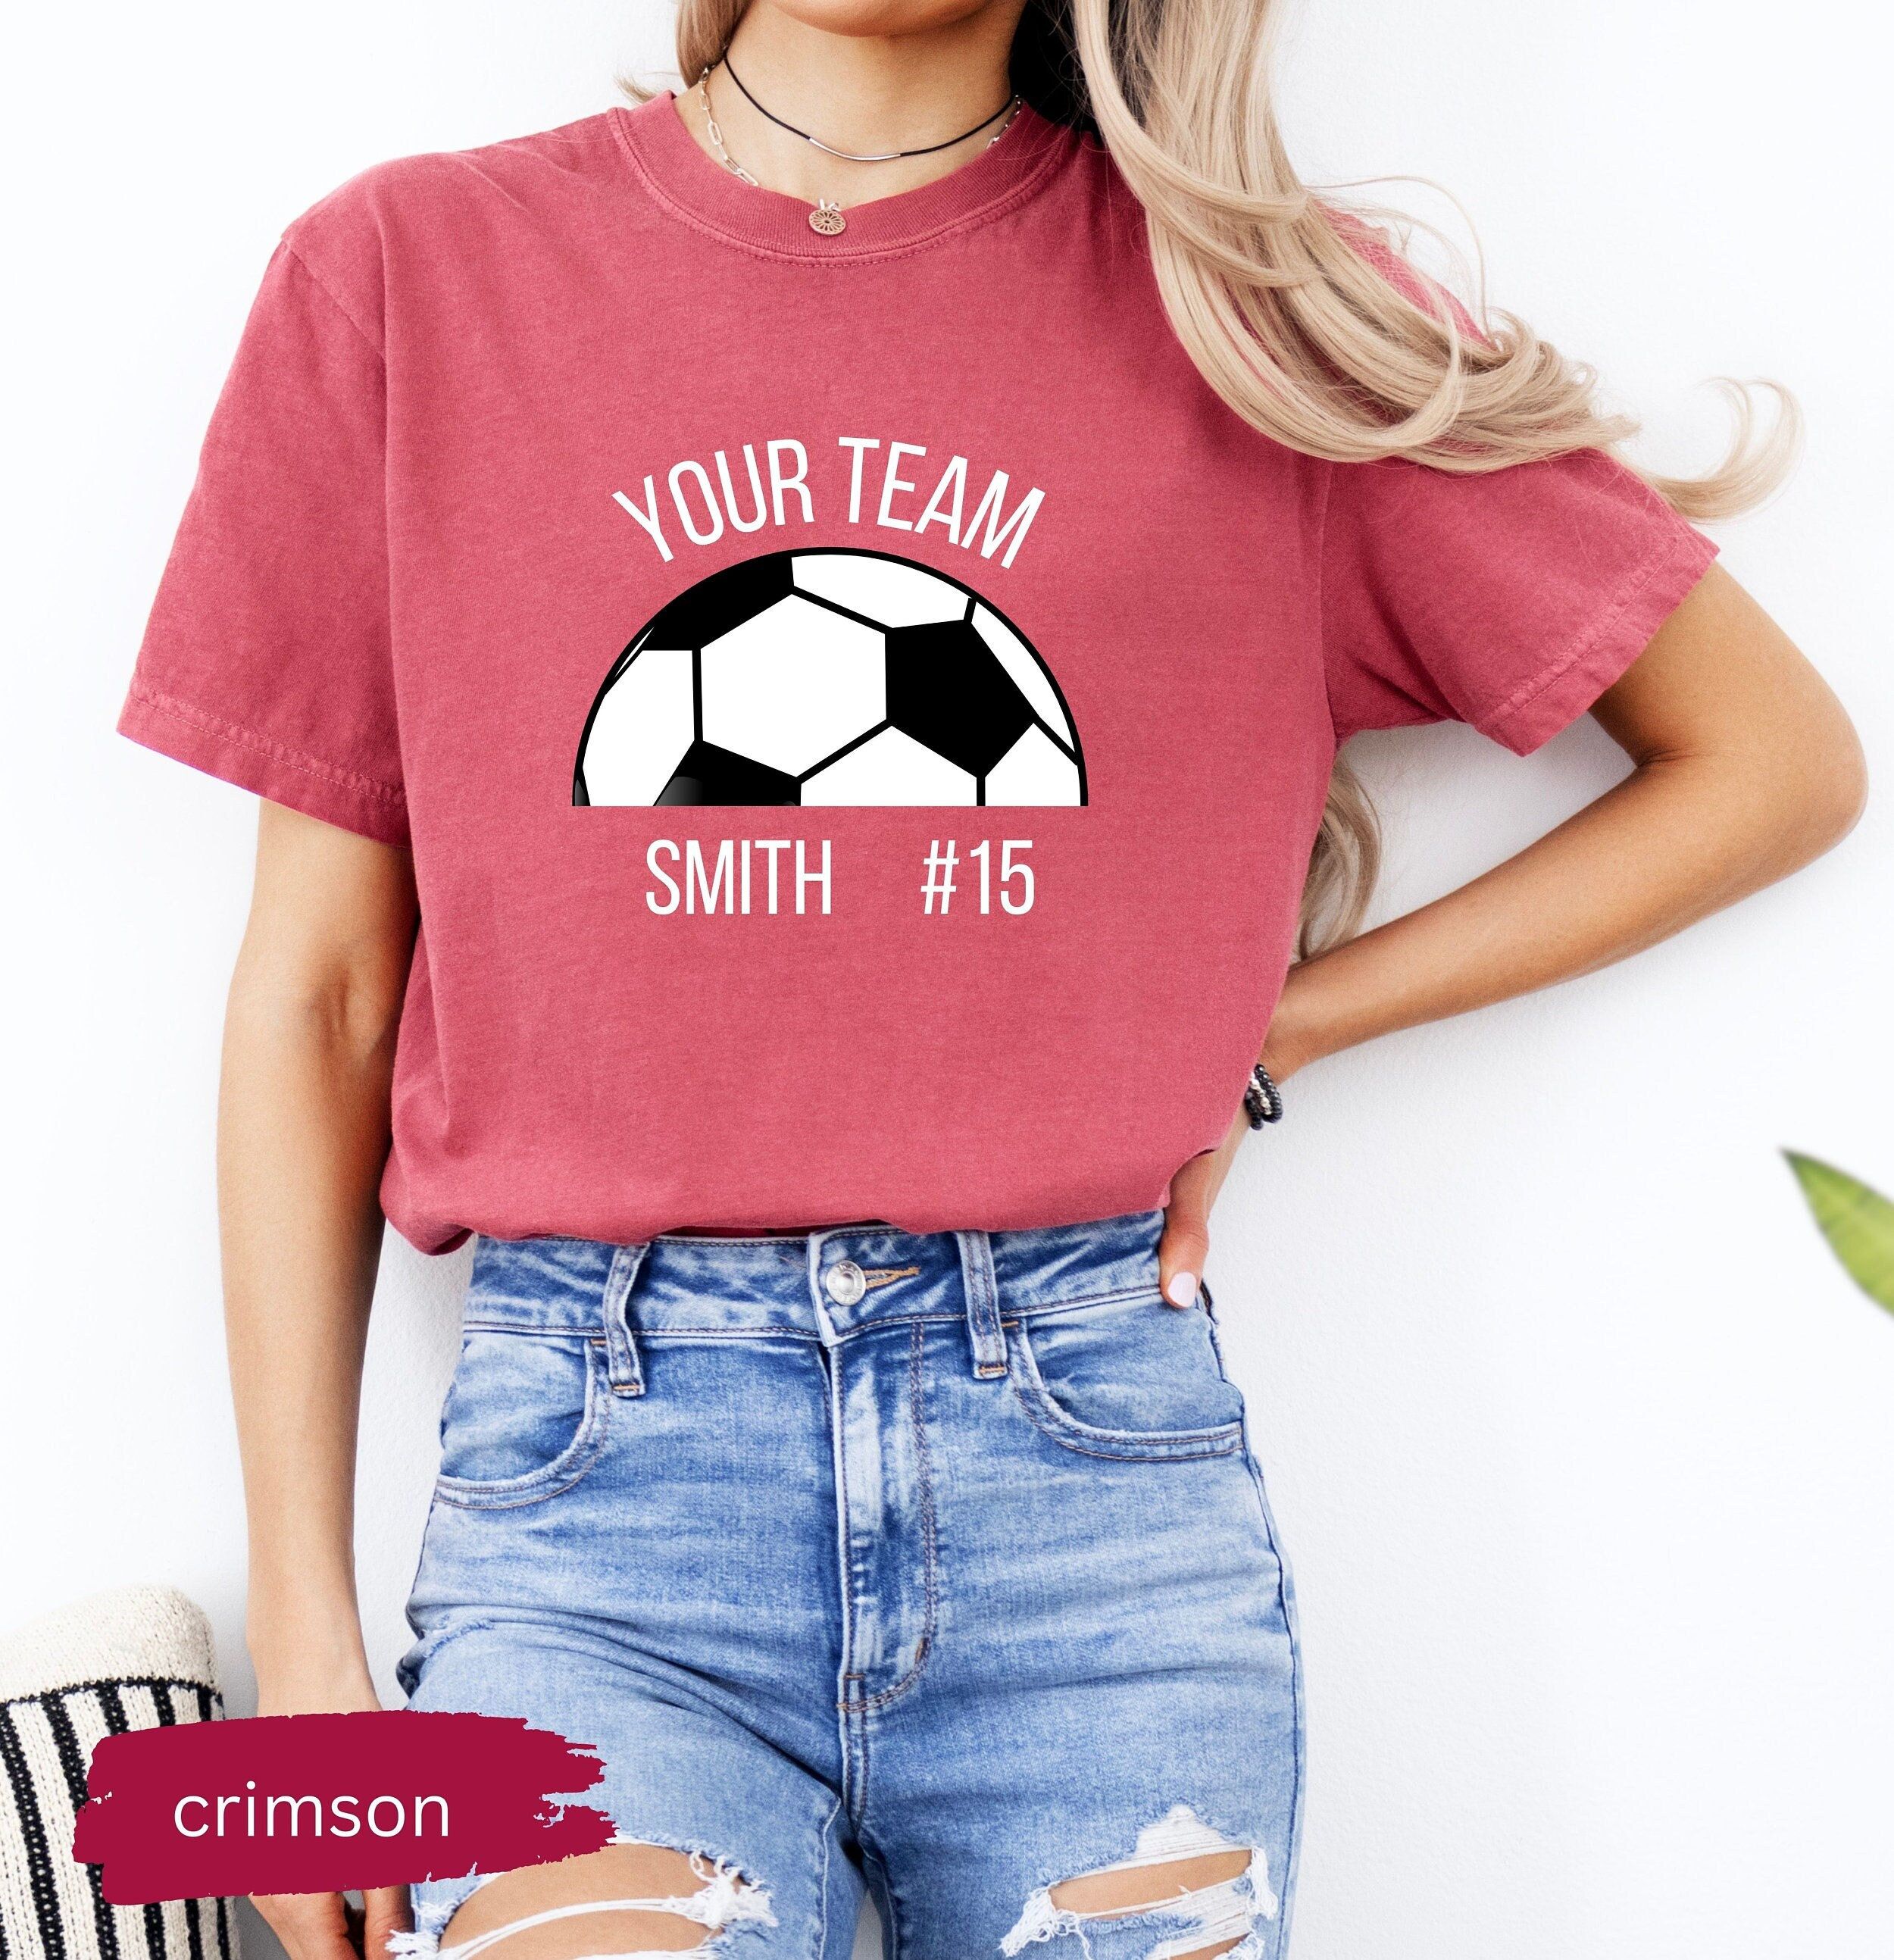 , Soccer Chemise de football personnalisée, chemise de football avec votre nom, chemise d’équipe de football personnalisée, chemise de jour de match, chemise de maman de football, esprit d’école, esprit de football – Etsy
|Pinterest